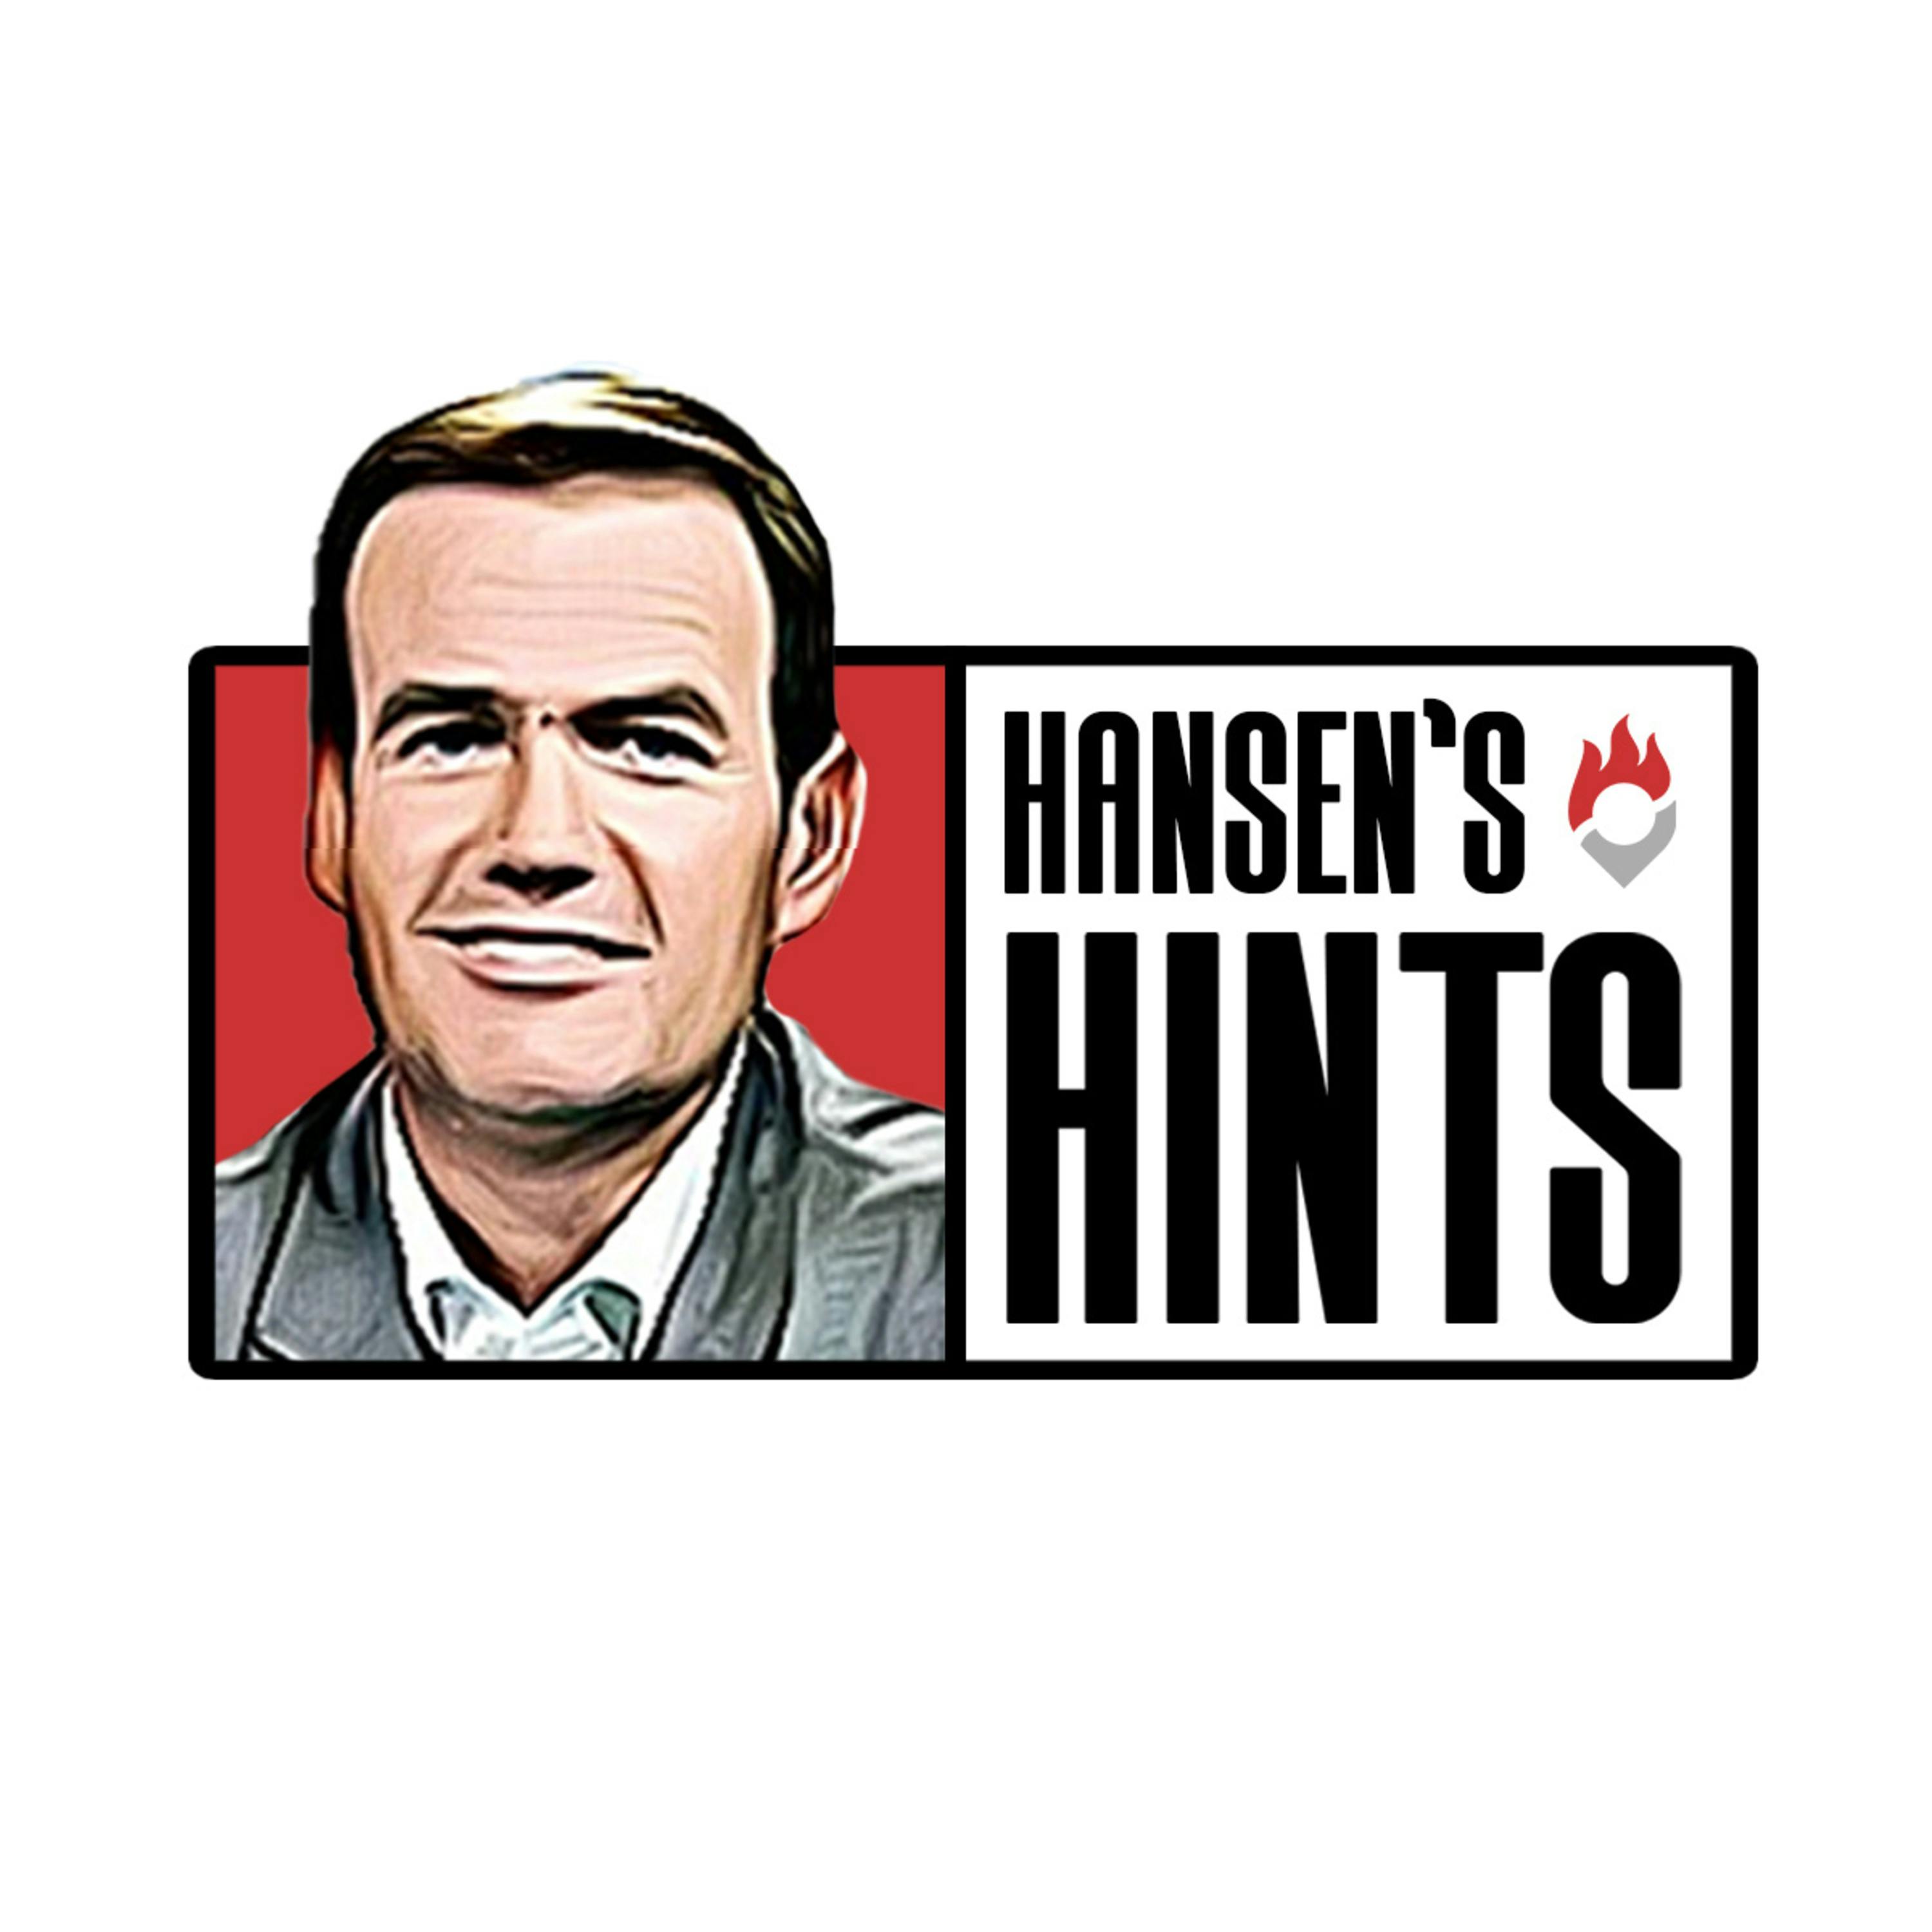 Guru's Week 17 Preview | Hansen's Hints Podcast